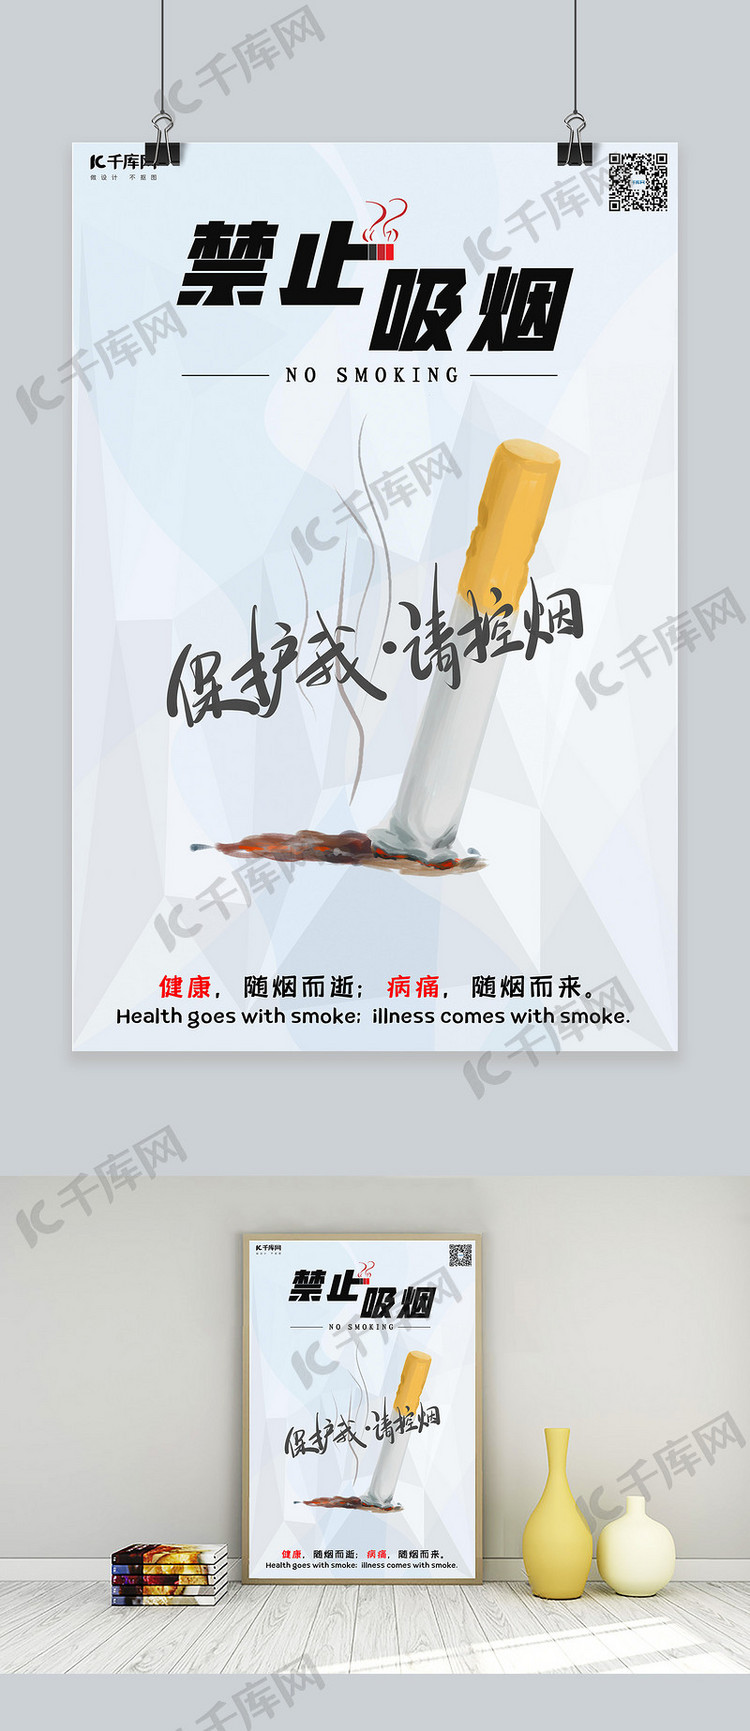 禁烟吸烟有害健康禁止吸烟公益海报